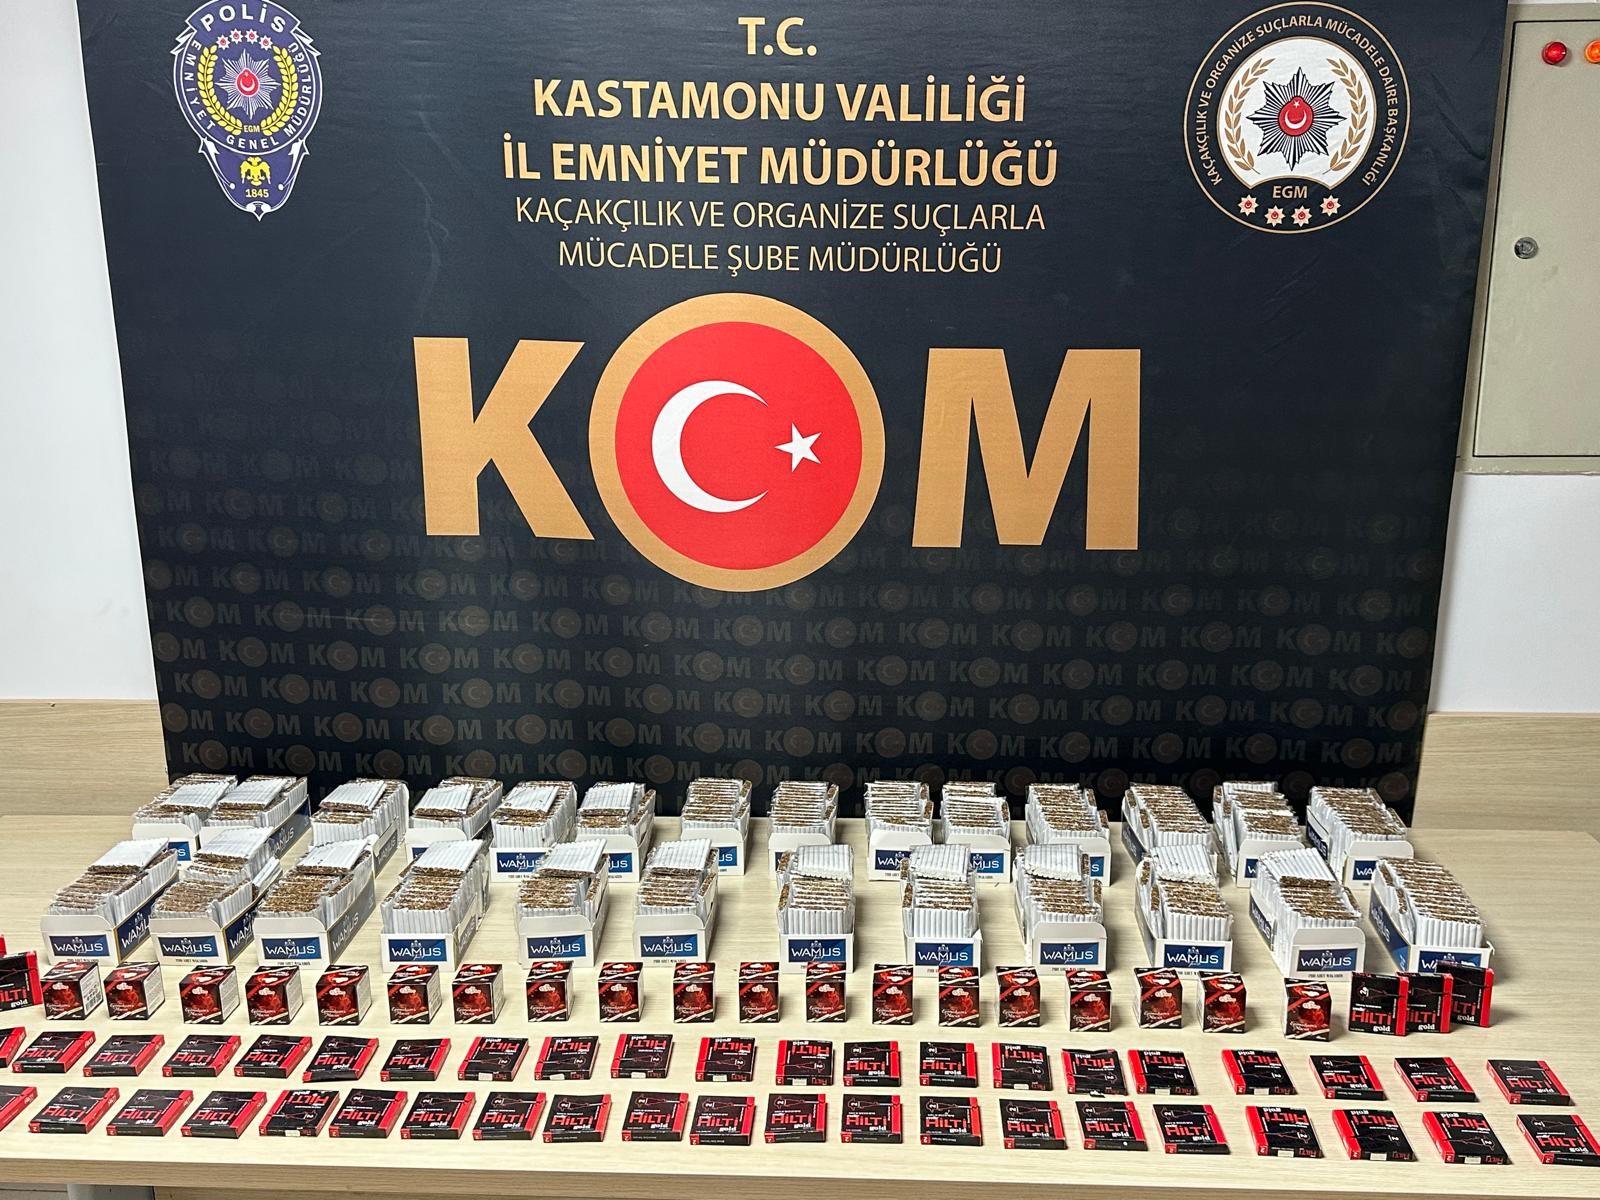 Kastamonu'da binlerce makarın ele geçirildi: 2 tutuklama